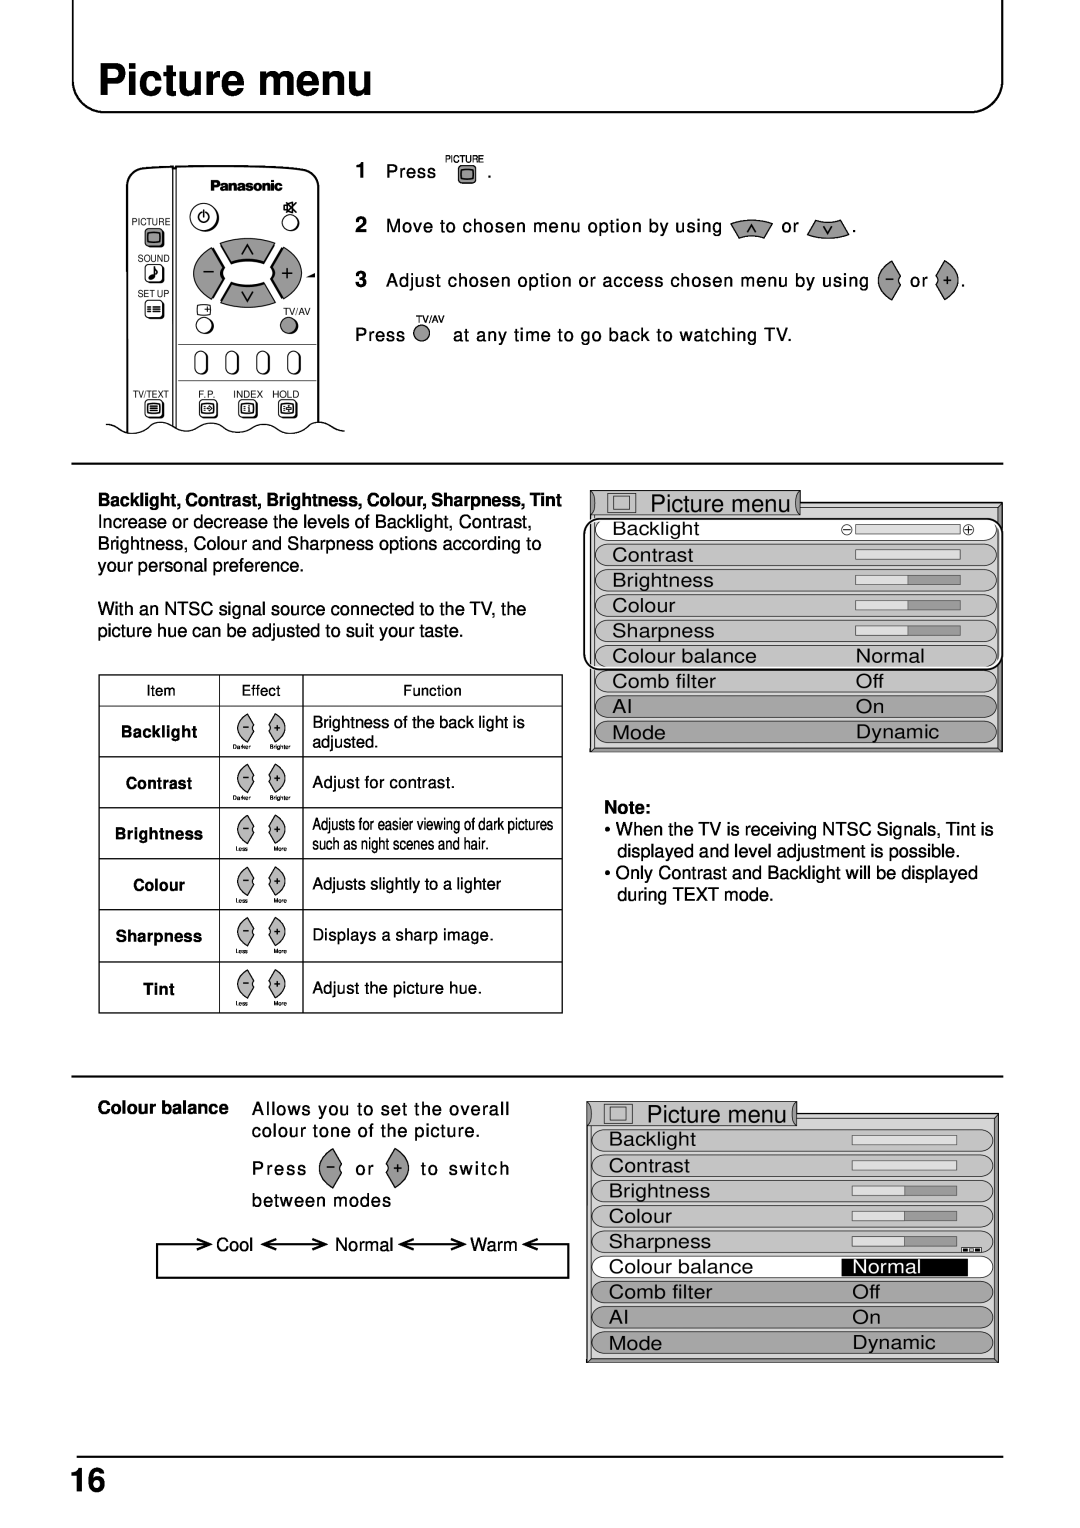 Panasonic TX-22LT2 manual Picture menu, Normal 